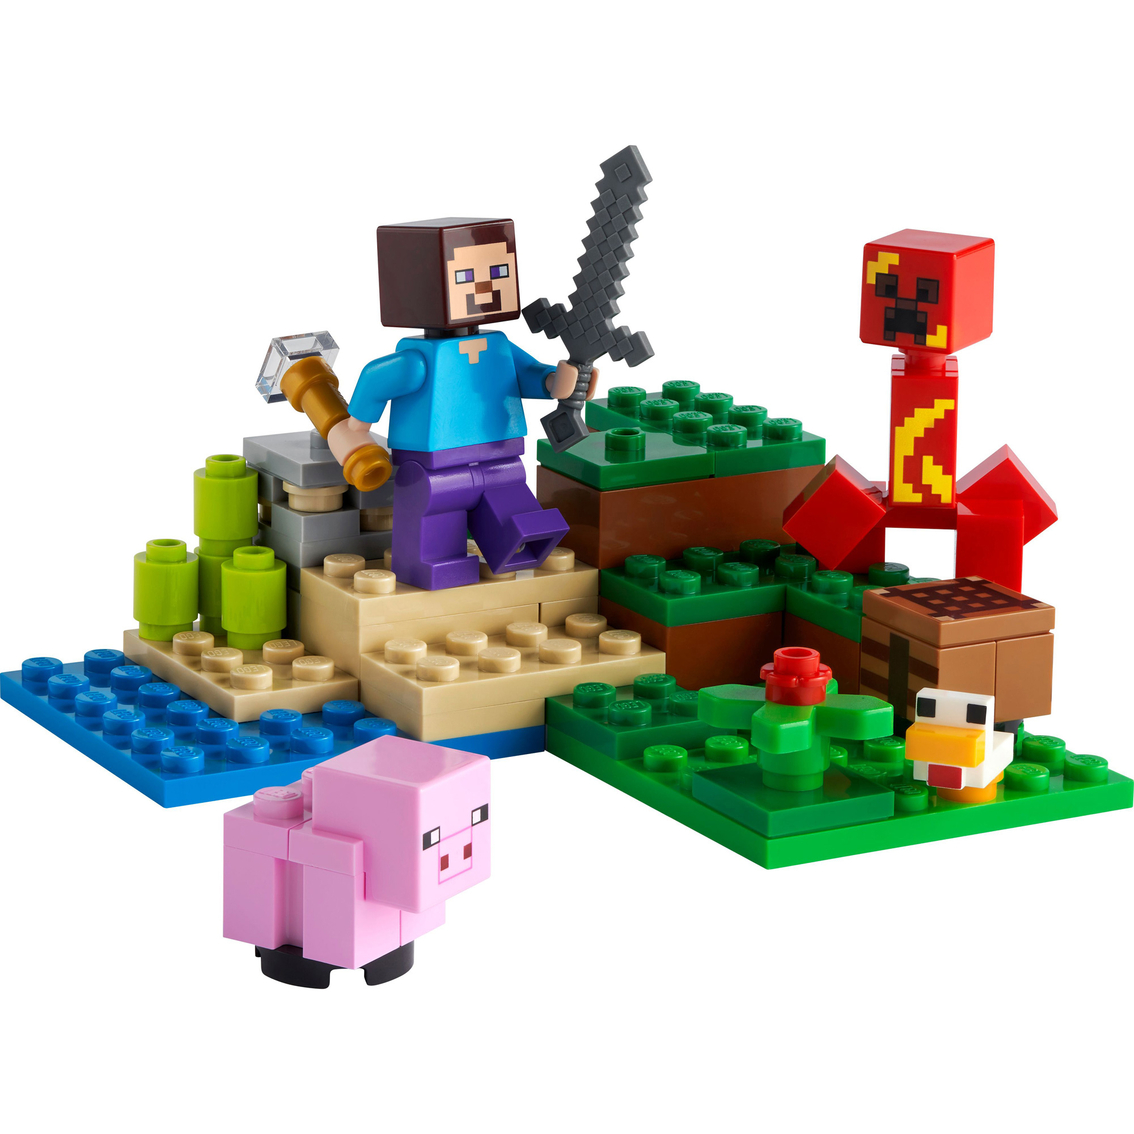 LEGO Minecraft The Creeper Ambush Toy - Image 3 of 3